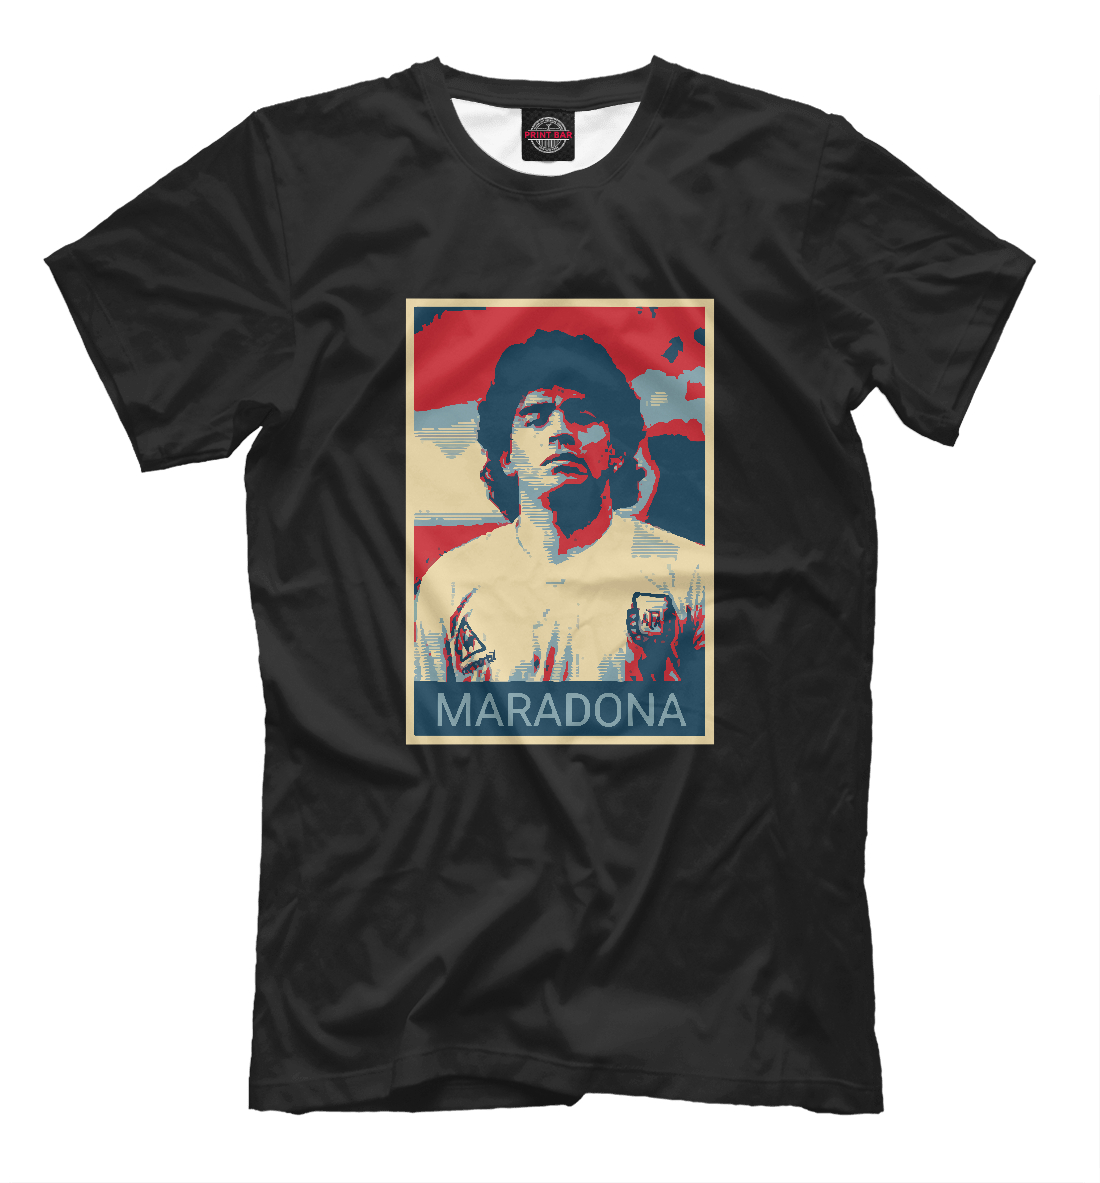 Мужская Футболка Maradona, артикул FLT-836145-fut-2mp